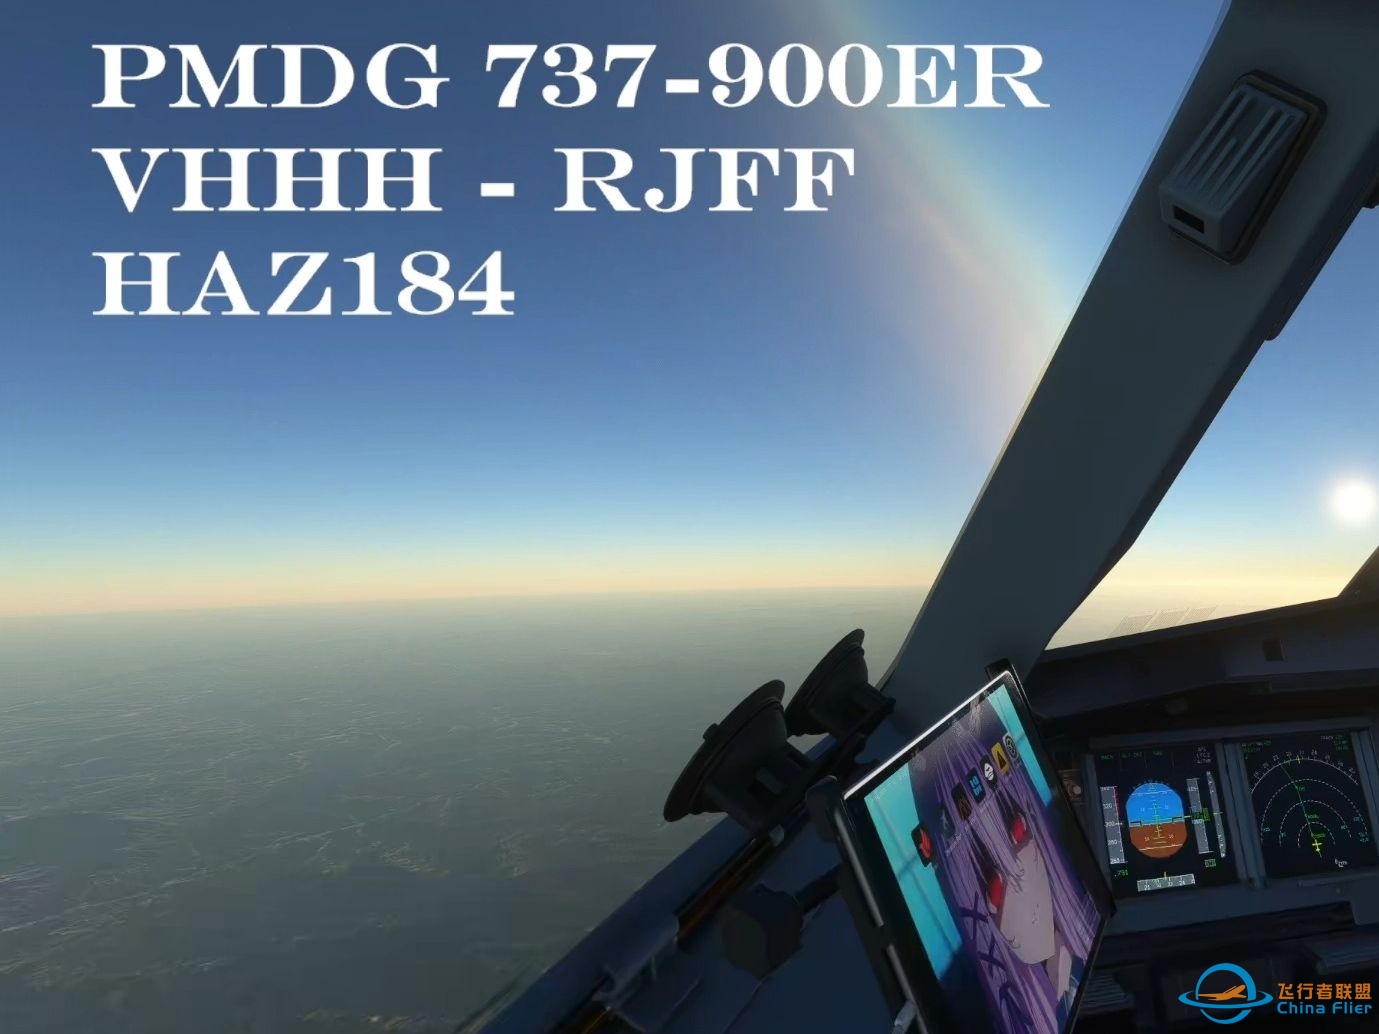 【微软飞行模拟】PMDG 737-900ER 香港——福冈-1185 